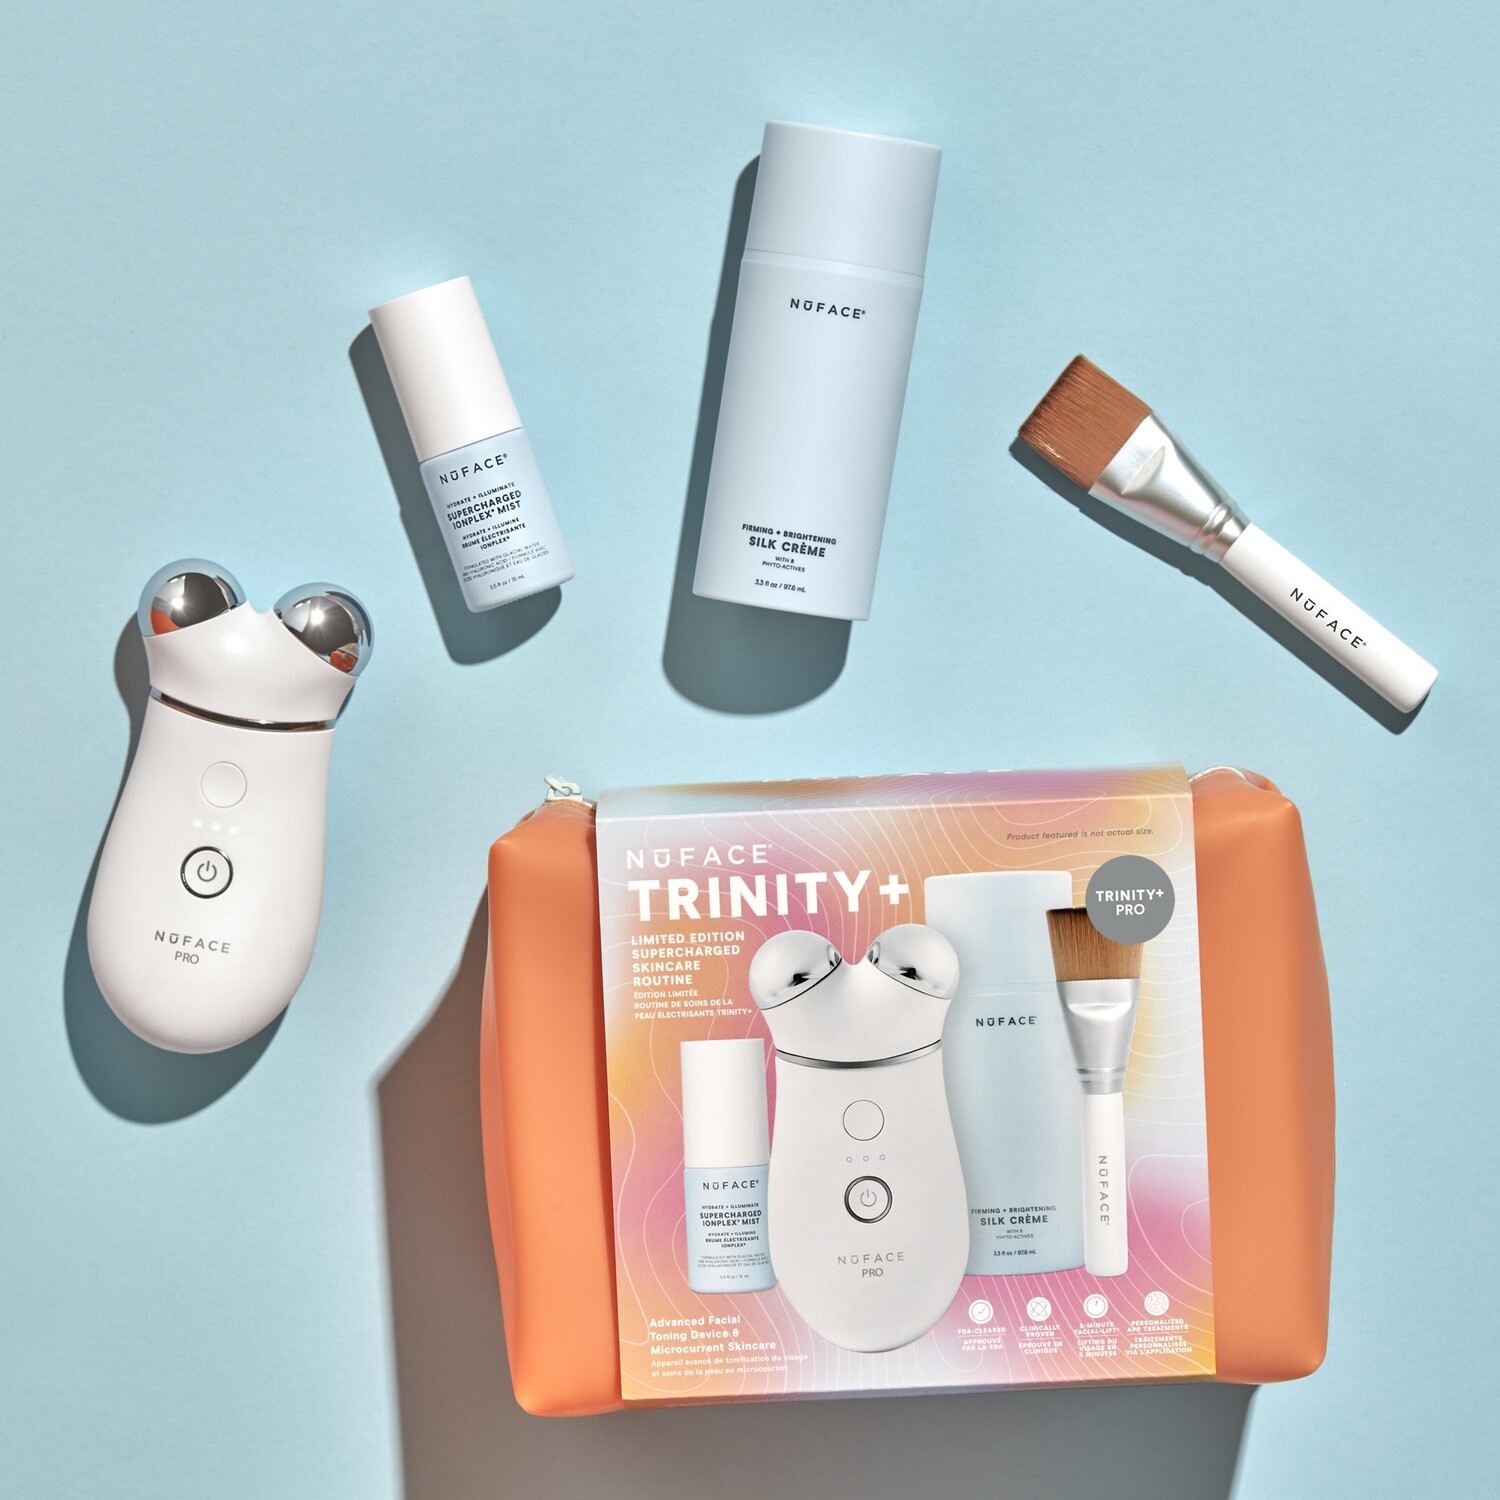 NuFACE TRINITY + Pro Supercharged Skincare Set